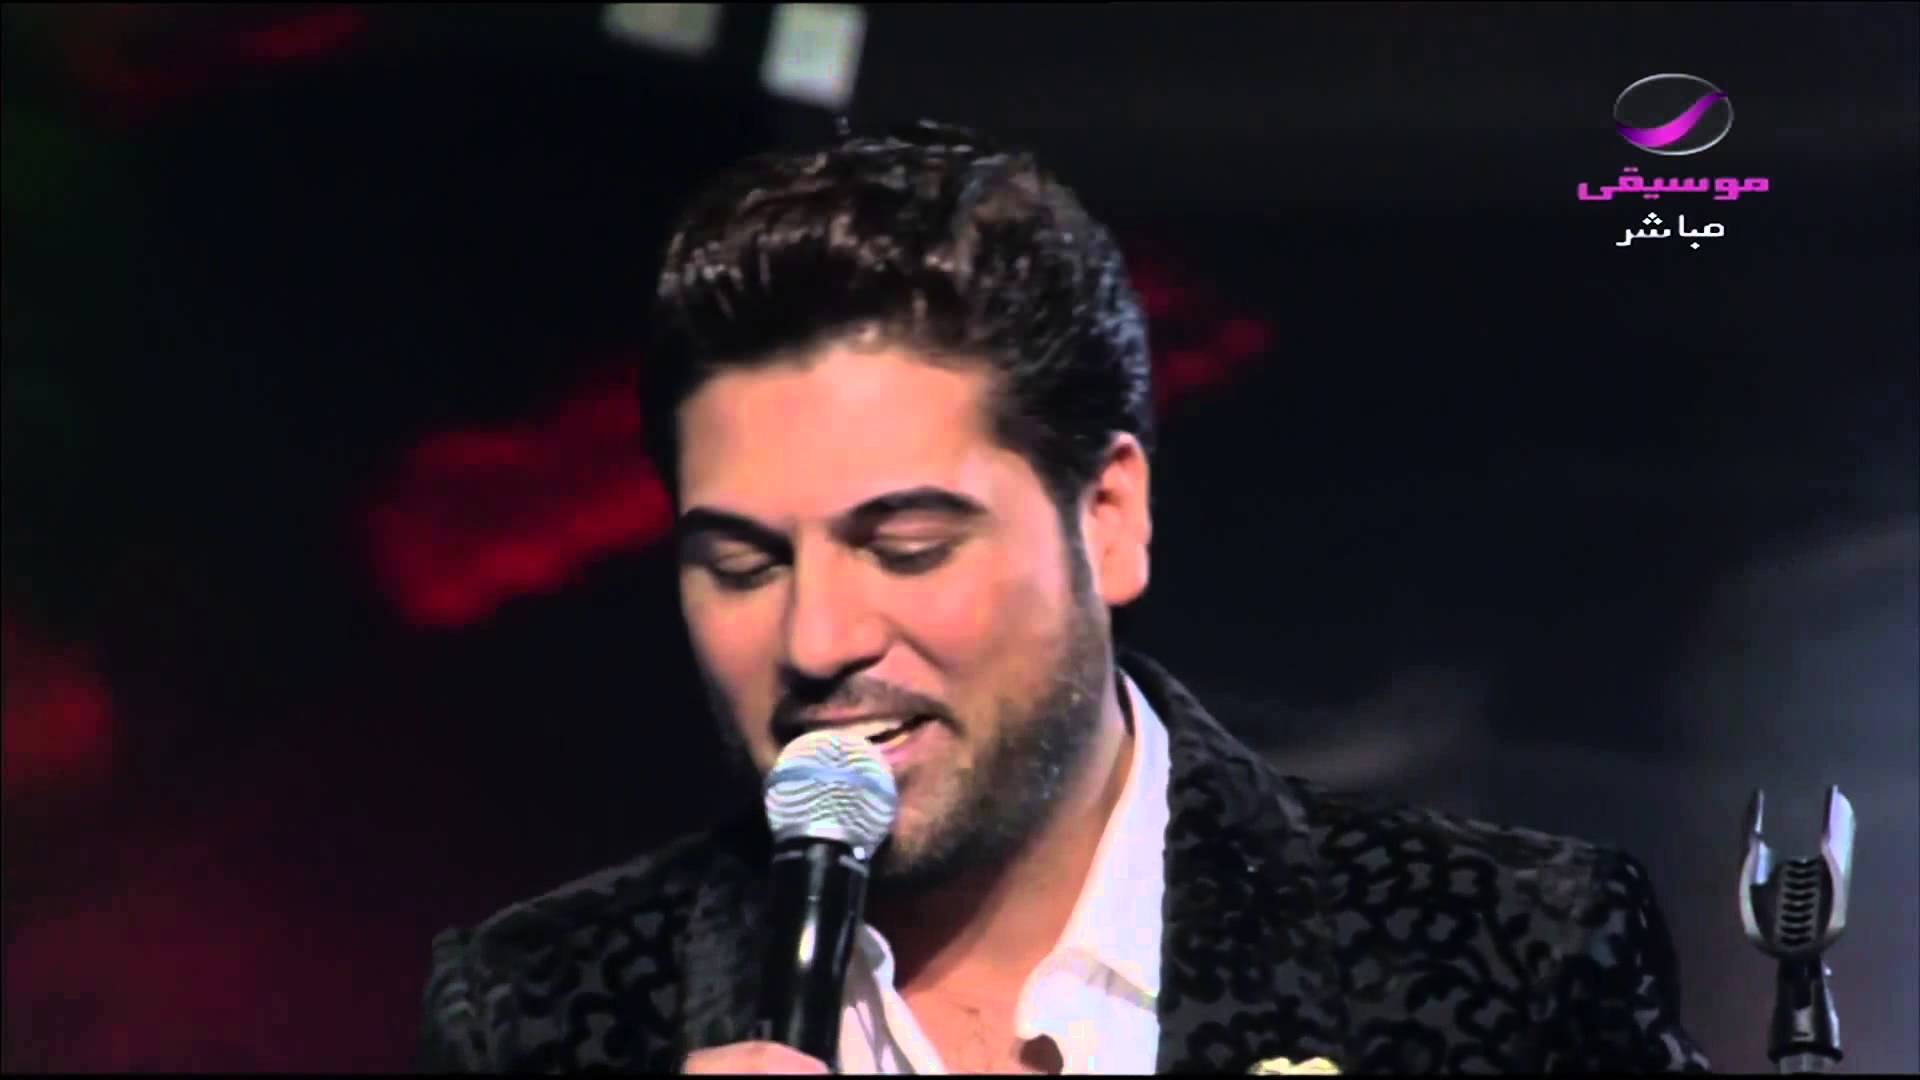 يوتيوب تحميل استماع اغنية طاير من الفرحة وليد الشامي 2015 Mp3 رابط مباشر